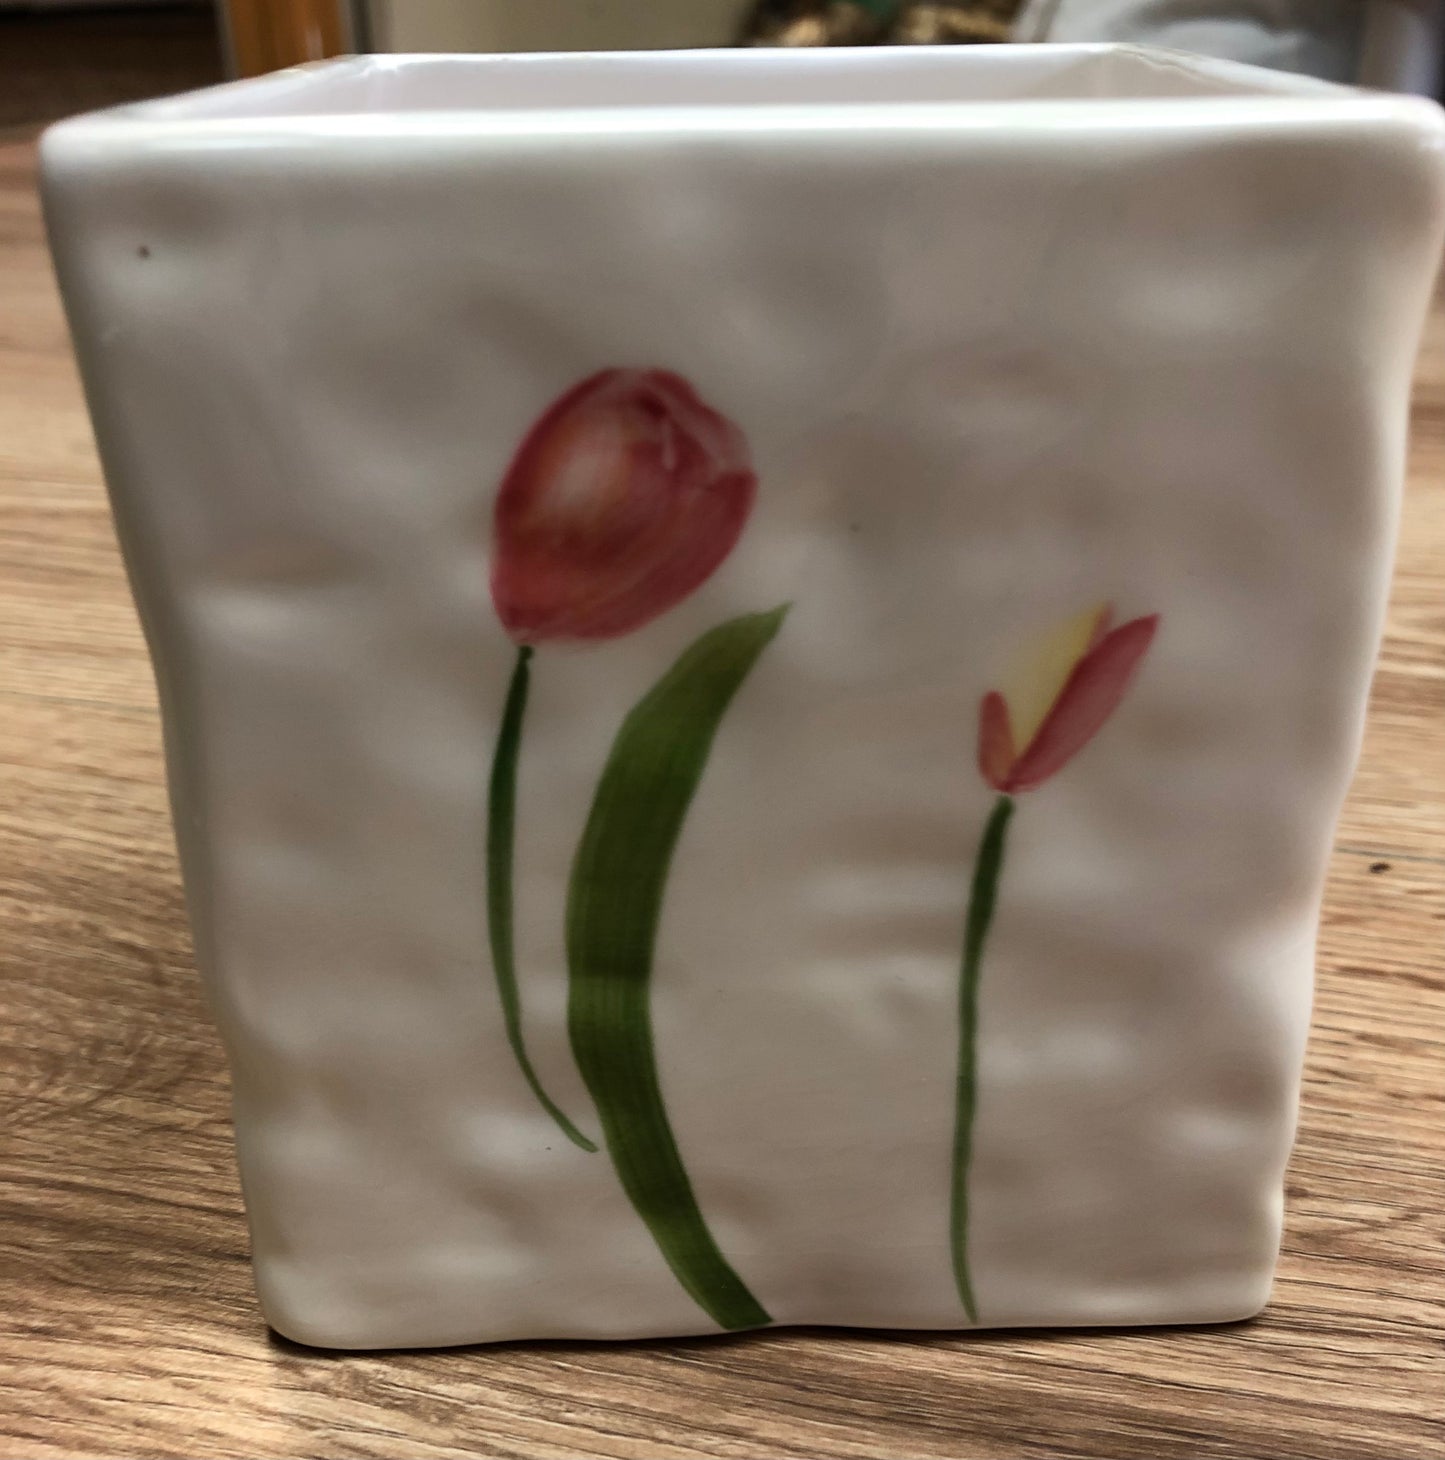 Square Ceramic tulip planter/decorative box